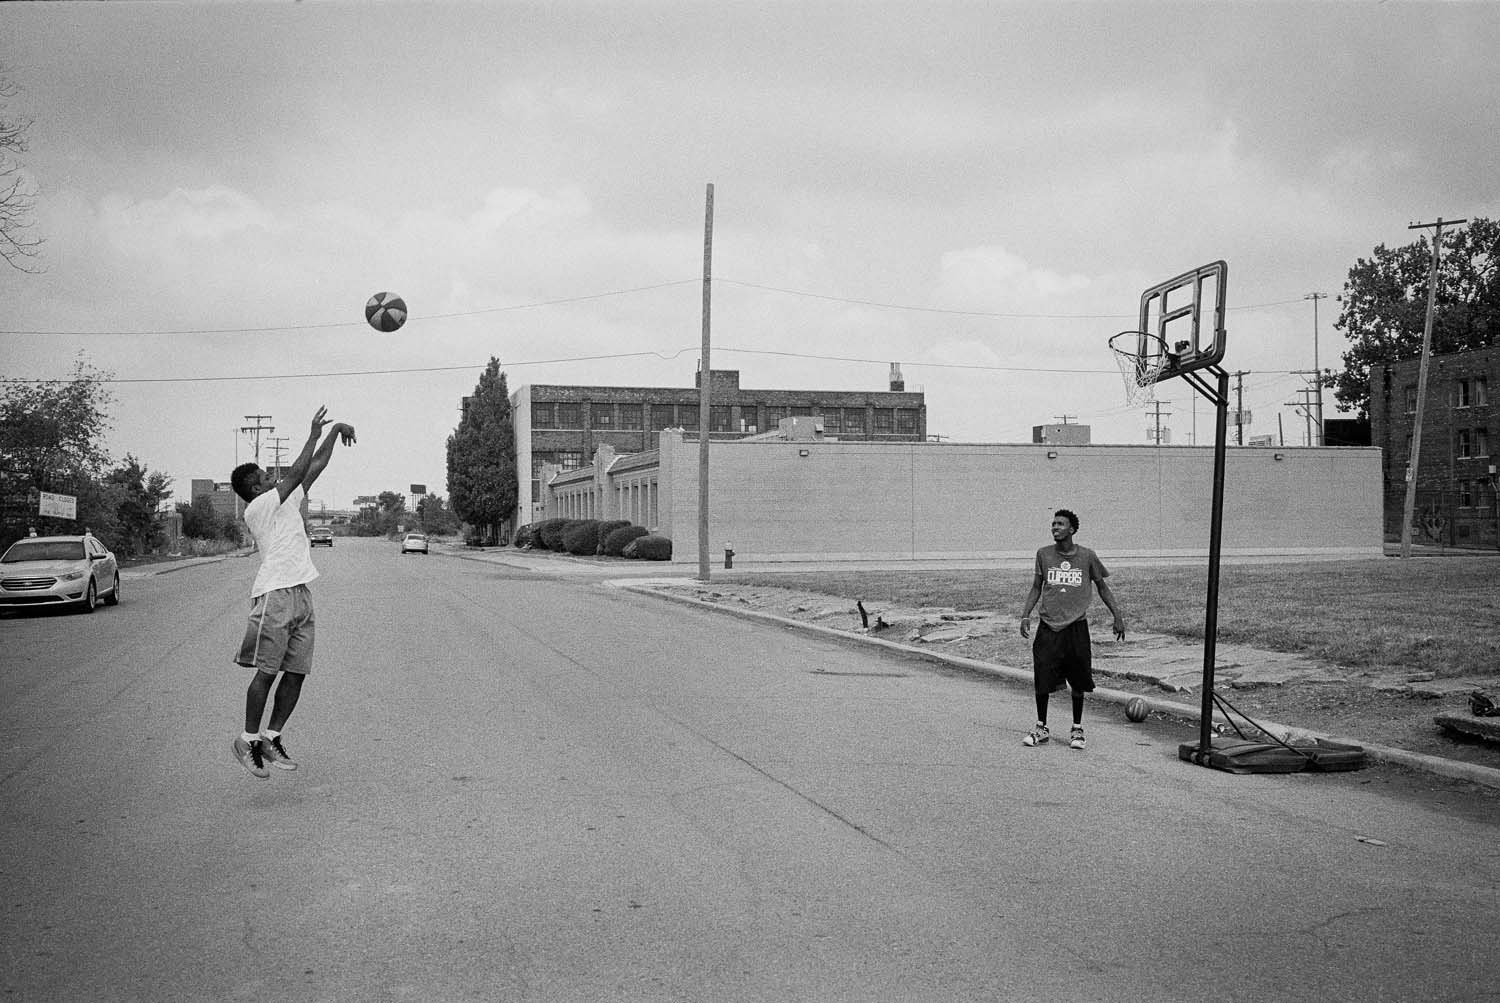 Kids Basketball - Ilford - HP5 - Leica M7 - Detroit